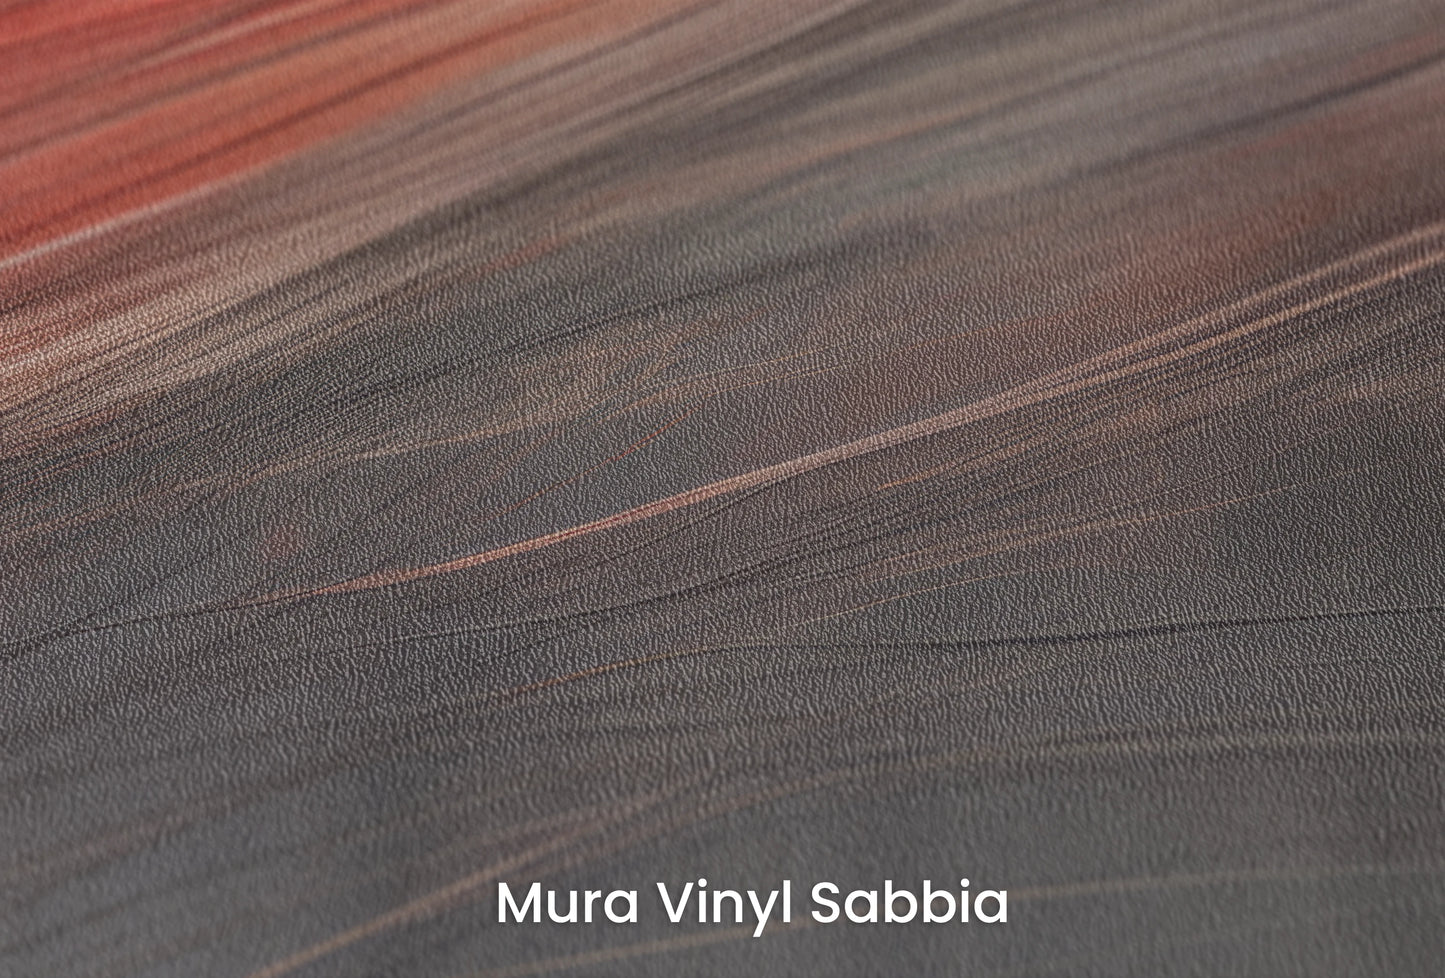 Zbliżenie na artystyczną fototapetę o nazwie Blaze of Glory na podłożu Mura Vinyl Sabbia struktura grubego ziarna piasku.